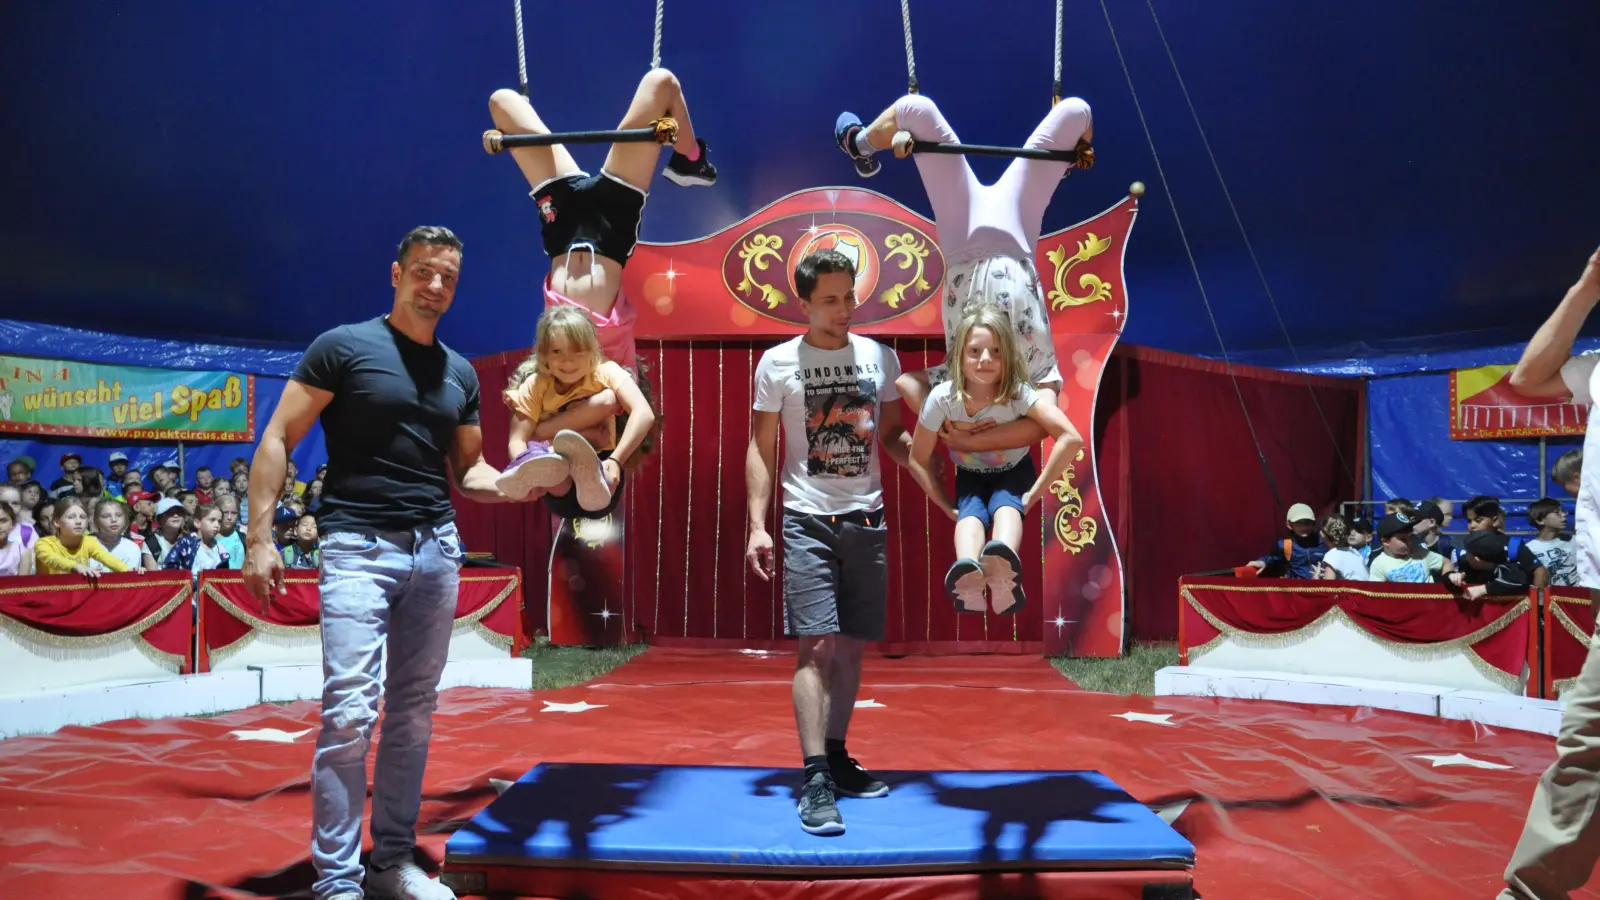 Erste Übungen am Trapez: Das Zirkuszelt in Triesdorf war am Montag voll von freudig aufgeregten Kindern, die sich in ihren Rollen versuchen durften. (Foto: Jonas Volland)